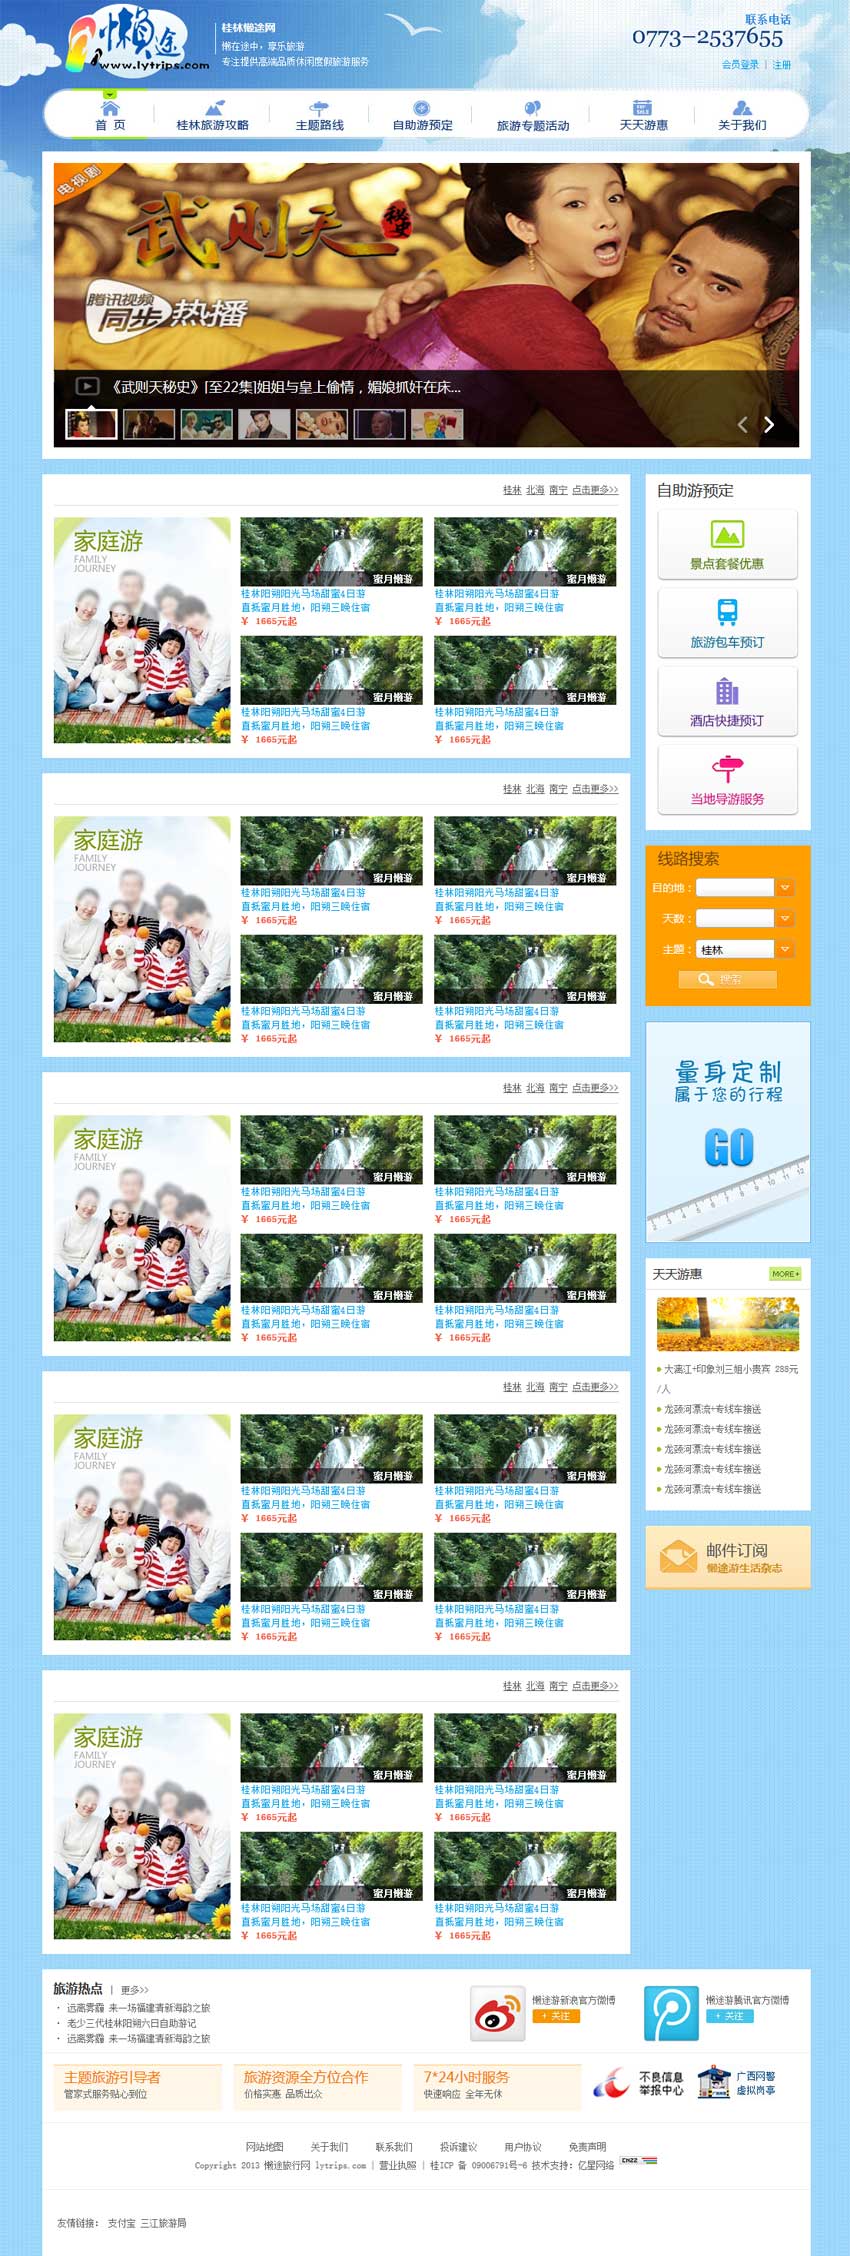 蓝色的桂林旅游网公司模板源码下载